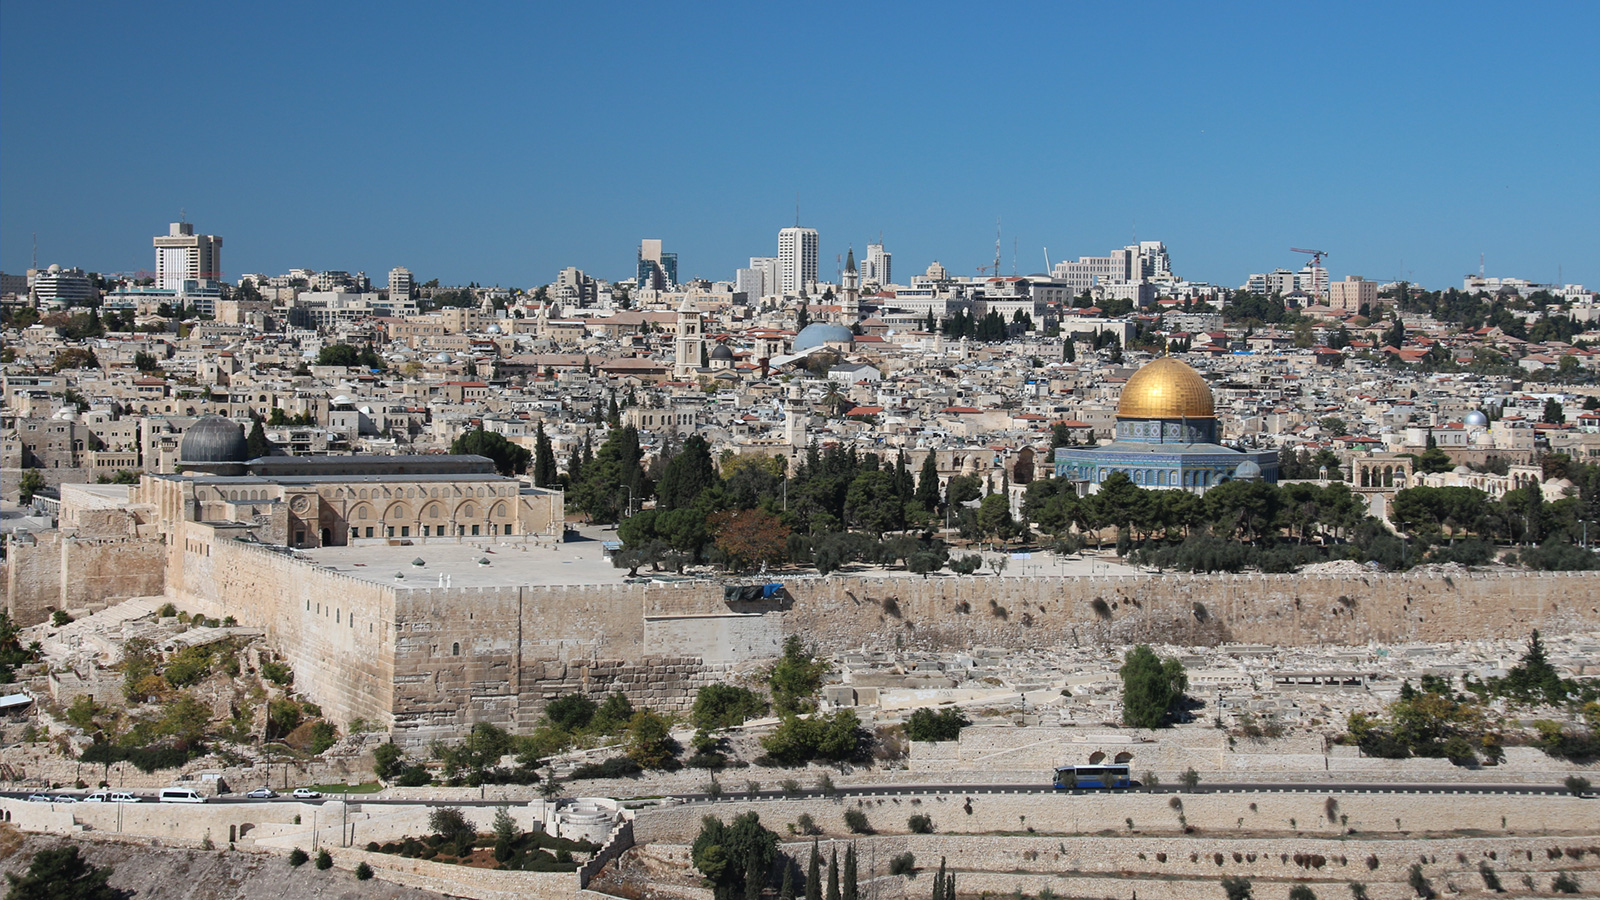 وجد أن سور القدس مهدم بسبب خشية صلاح الدين من إعادة الصليبيين احتلال المدينة المقدسة (مواقع التواصل)